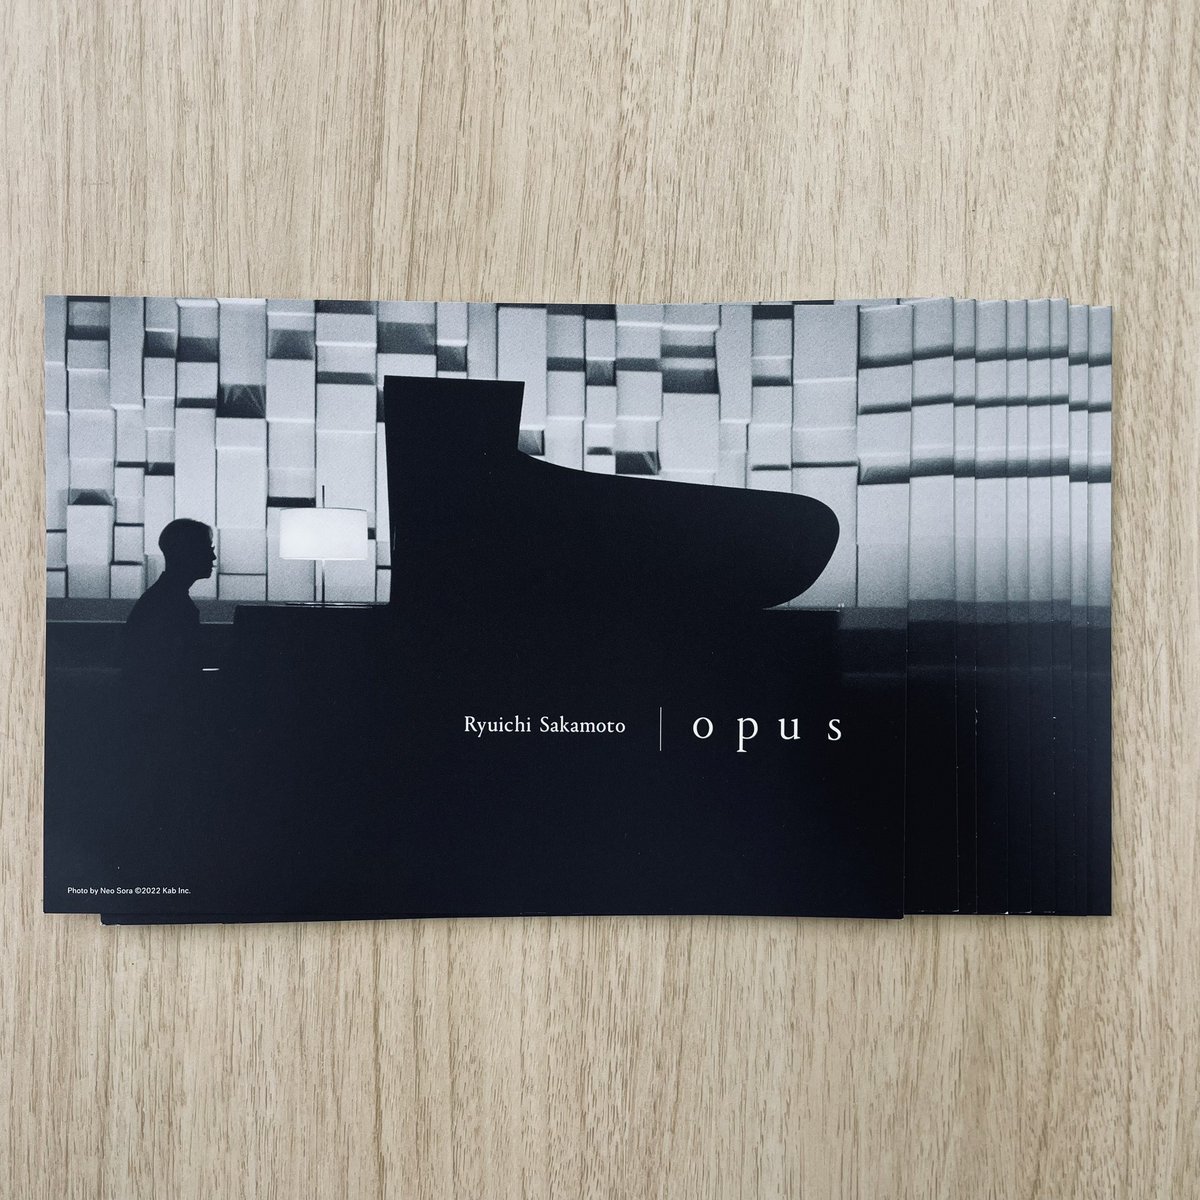 #𝐎𝐩𝐮𝐬‐𝐈𝐧𝐟𝐨𝐫𝐦𝐚𝐭𝐢𝐨𝐧

ご来場の方には『Ryuichi Sakamoto | Opus』オリジナルポストカードをプレゼントしています。
セットリストが掲載されている裏面はご来場の際のお楽しみに…🎶
5月10日から公開の劇場でも配布予定です！

🔽詳細はこちら
note.com/bittersend/n/n…

#坂本龍一